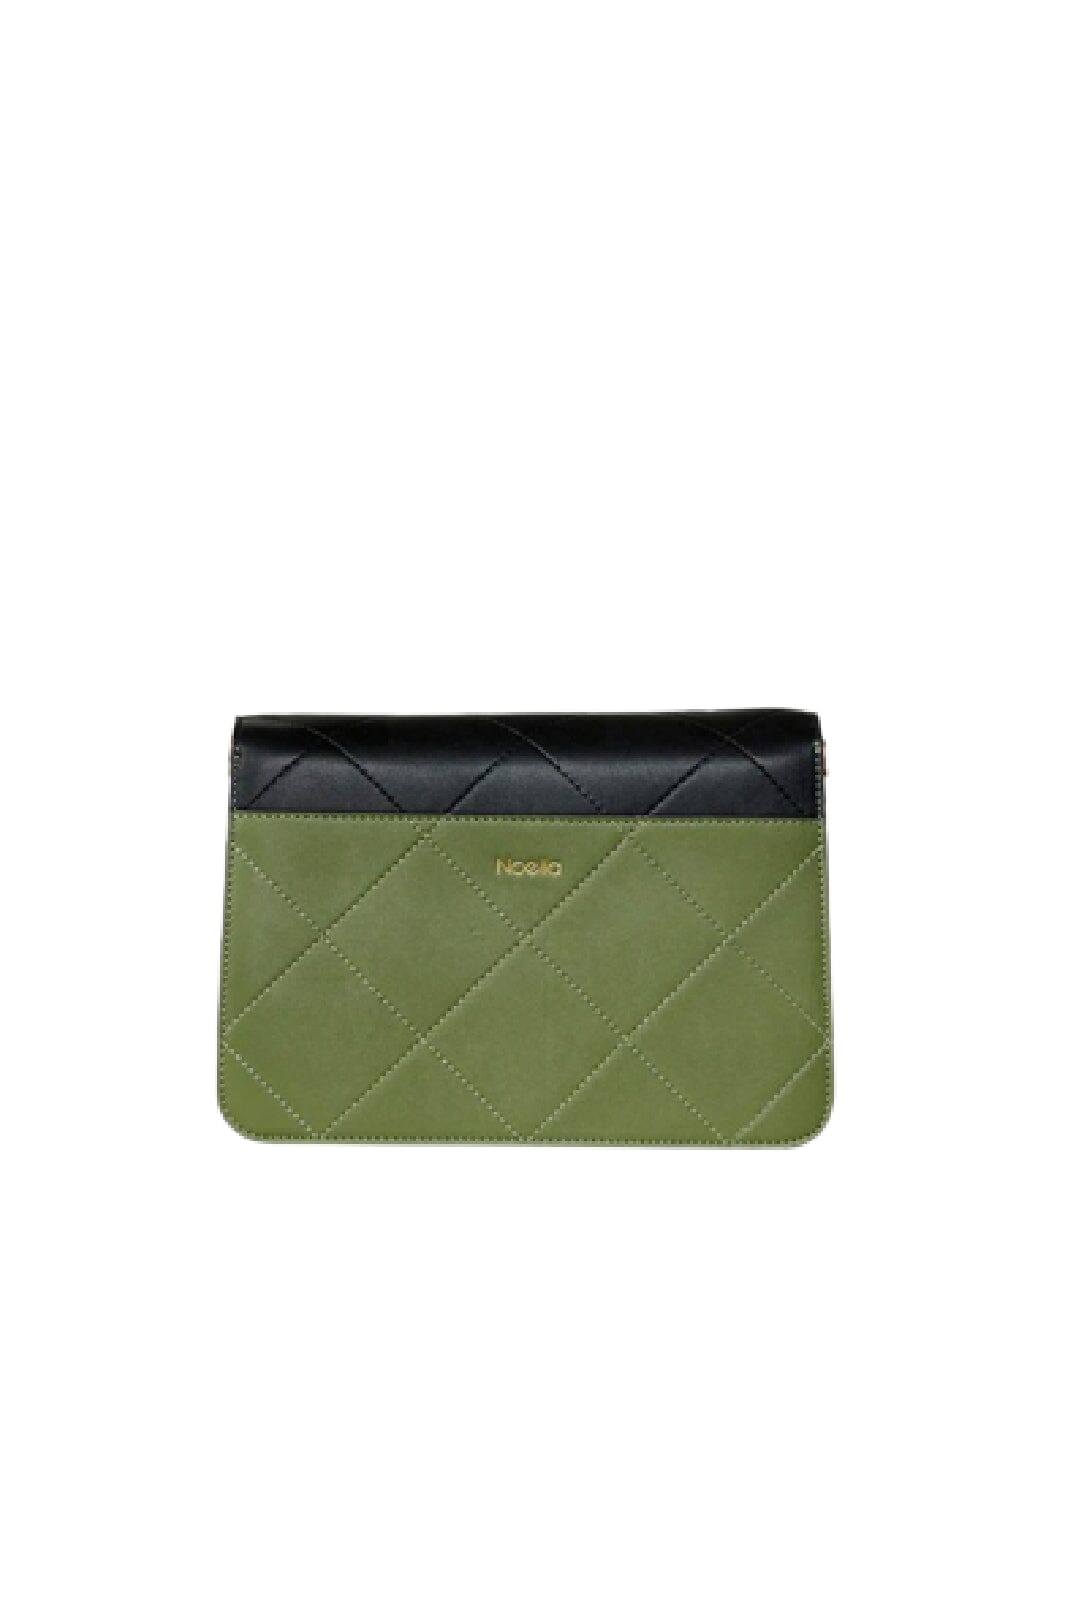 Noella - Blanca Bag Medium - Black/green/cream Tasker 